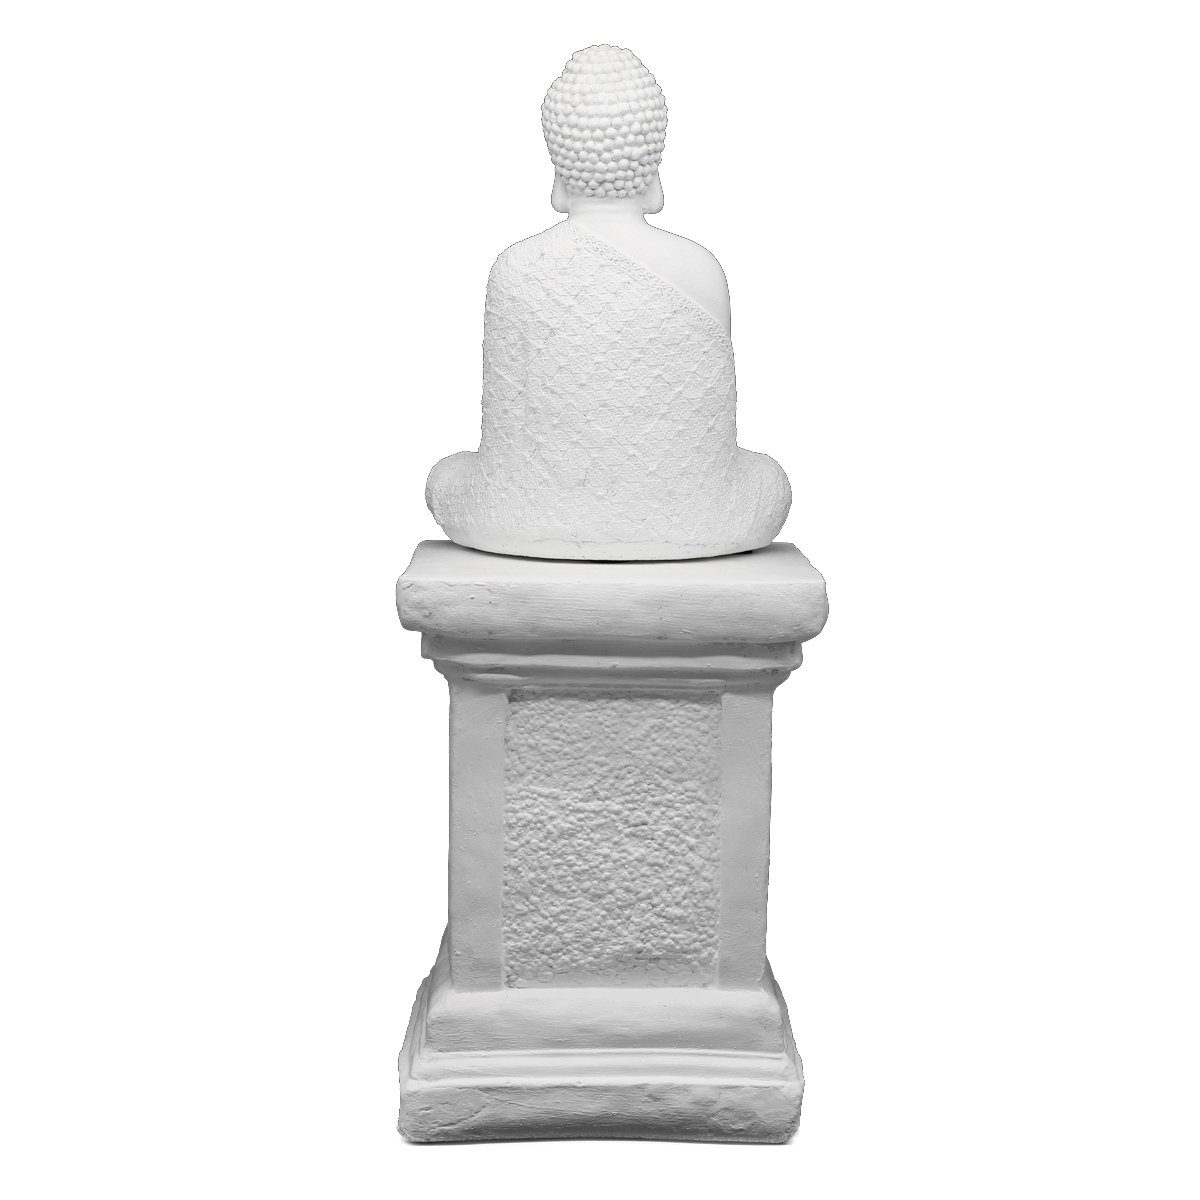 mit Stein Germany in Tiefes winterfest, weiß frostsicher, - Säule Figur Buddha Kunsthandwerk aus Statue, Made Buddhafigur